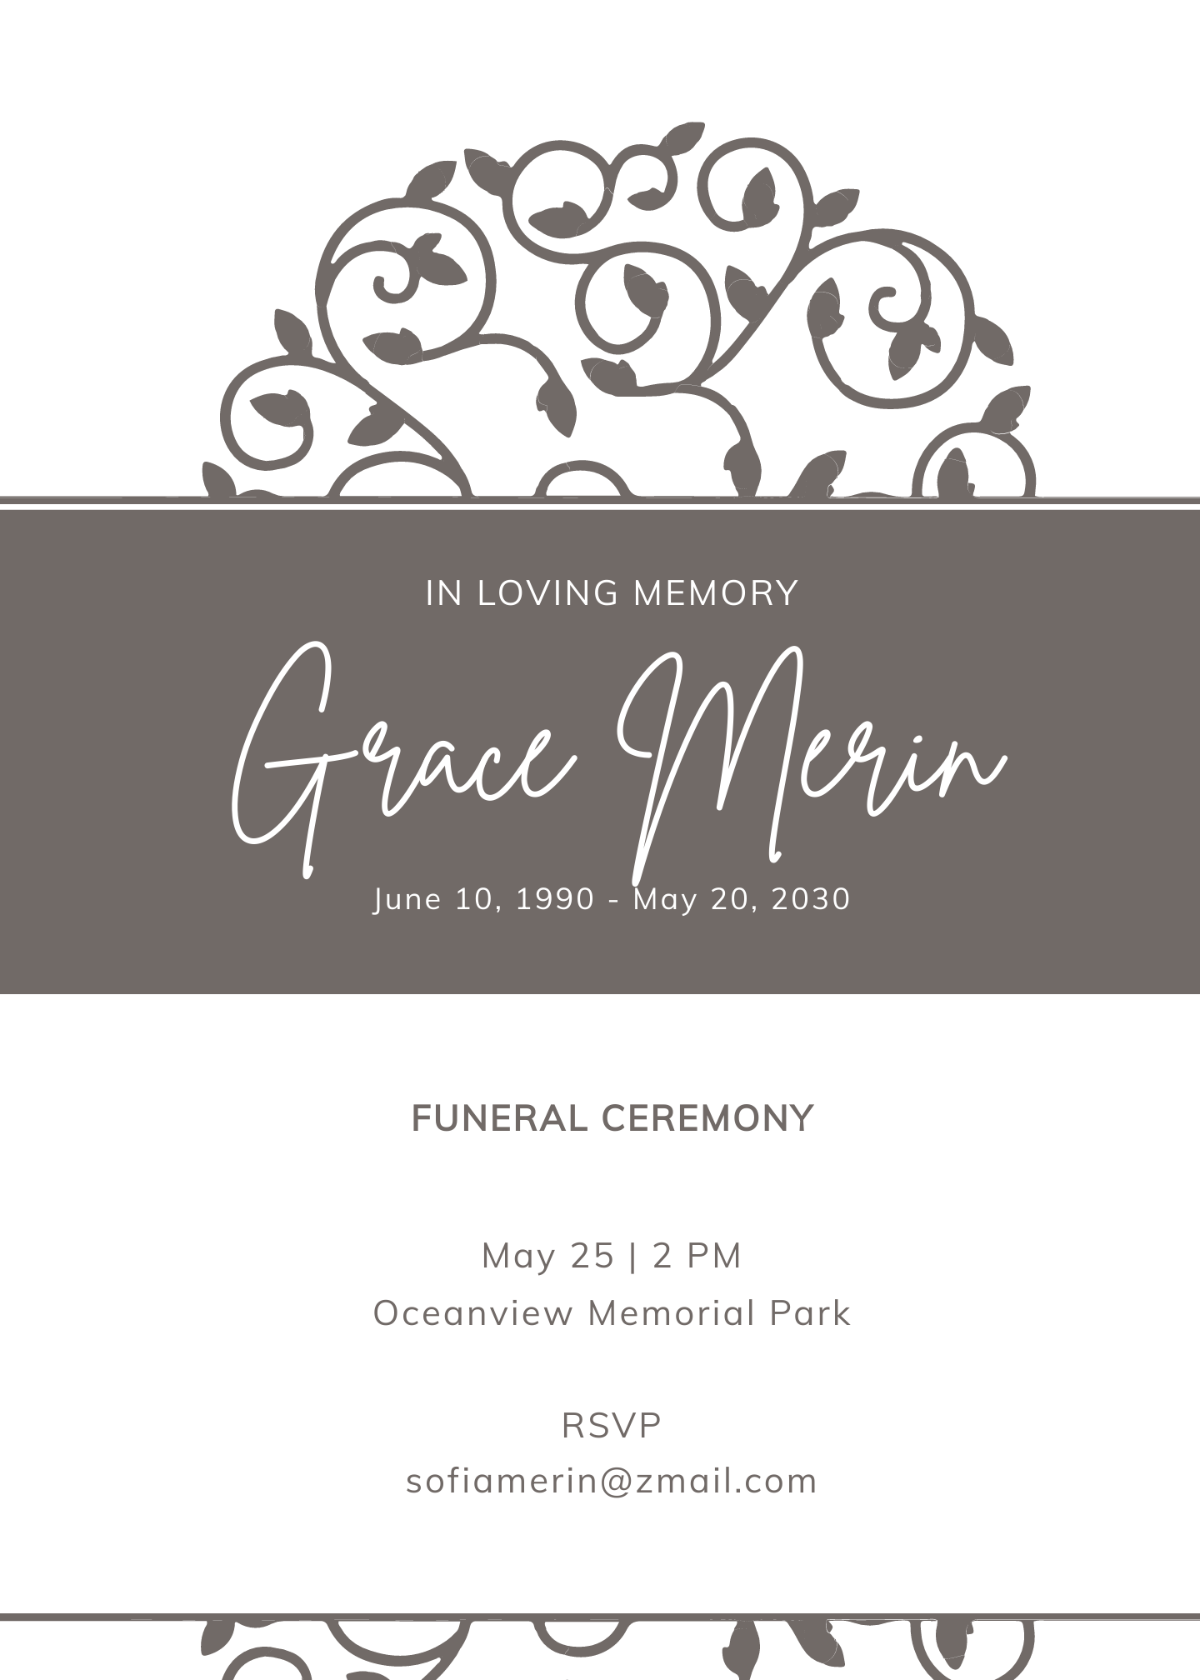 Creative Funeral Ceremony Invitation Template